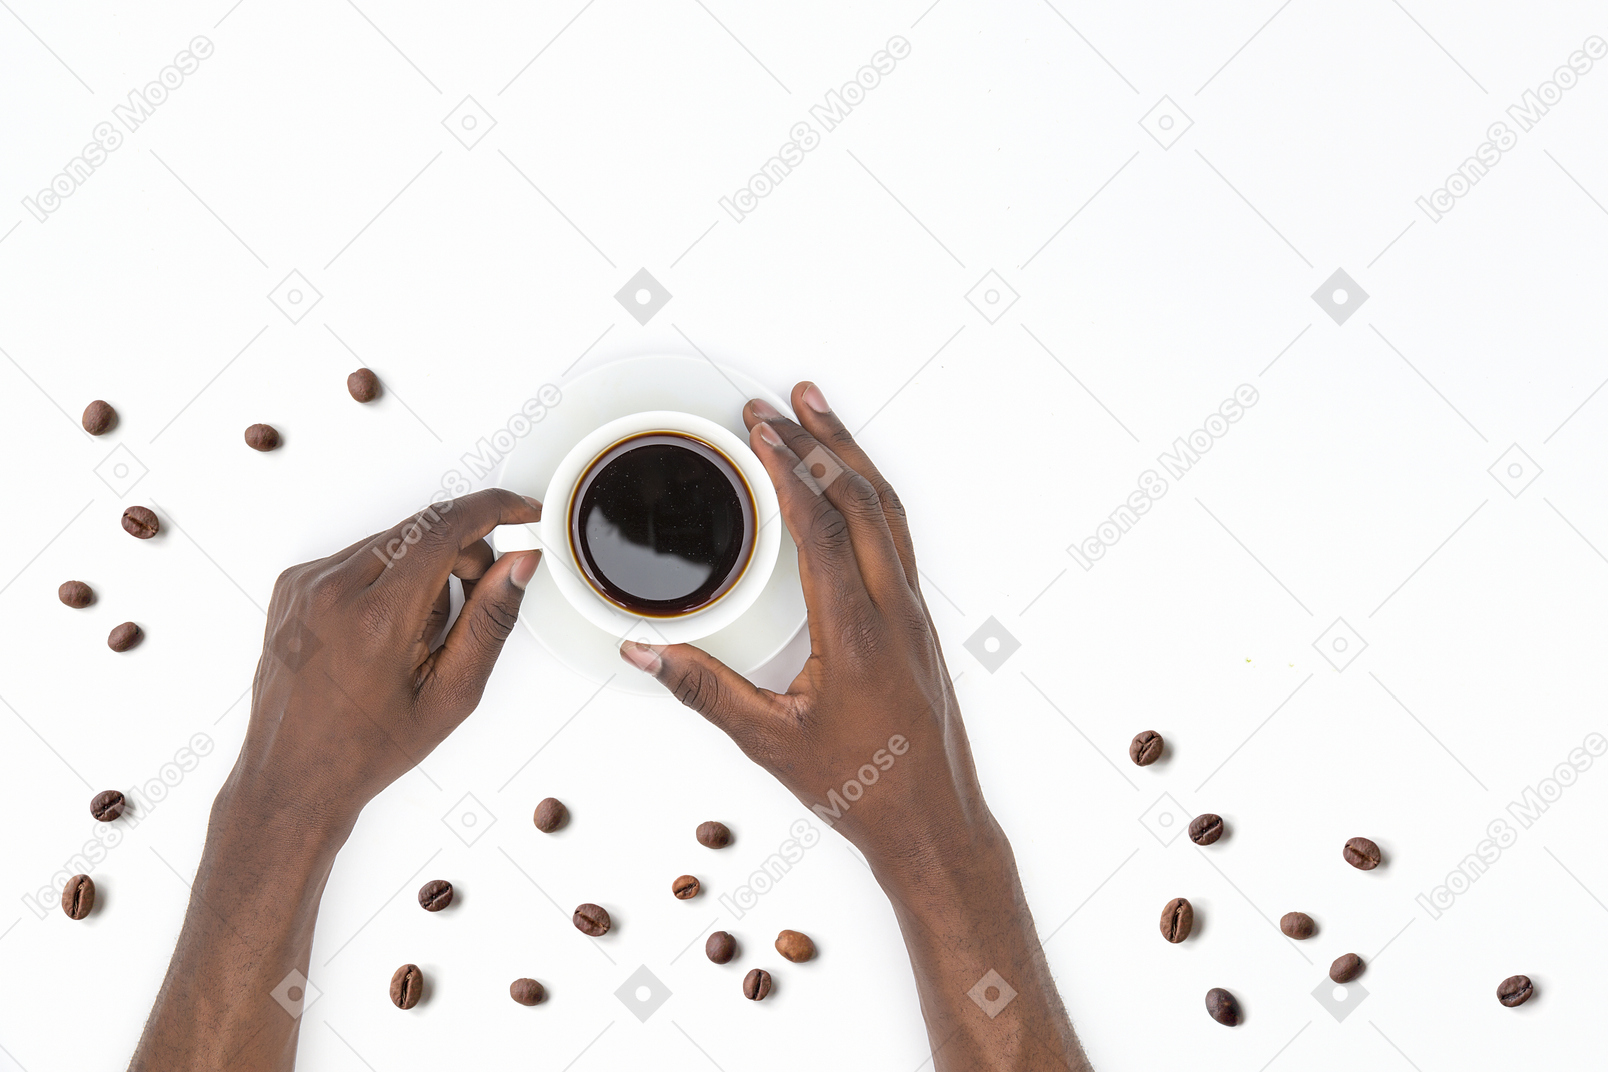 Mani maschii nere che tengono tazza di caffè nero